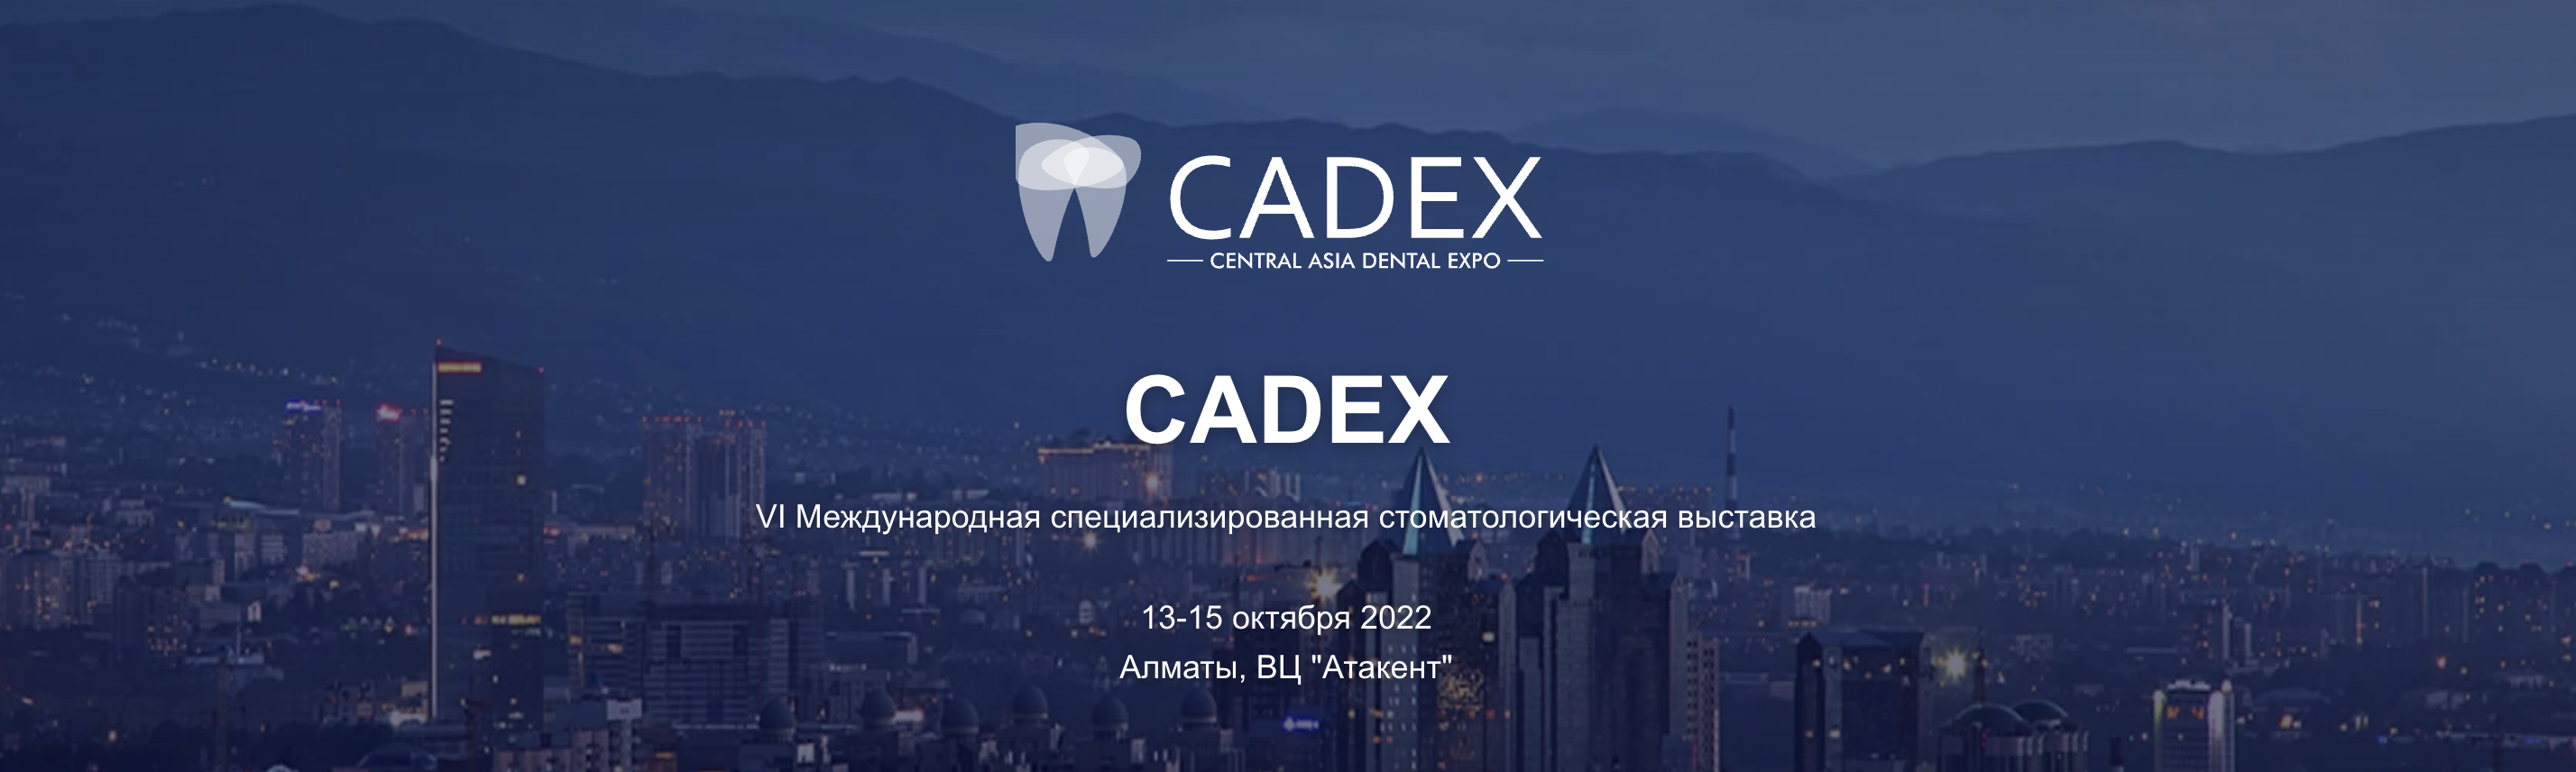 Central Asia Dental Expo 2022